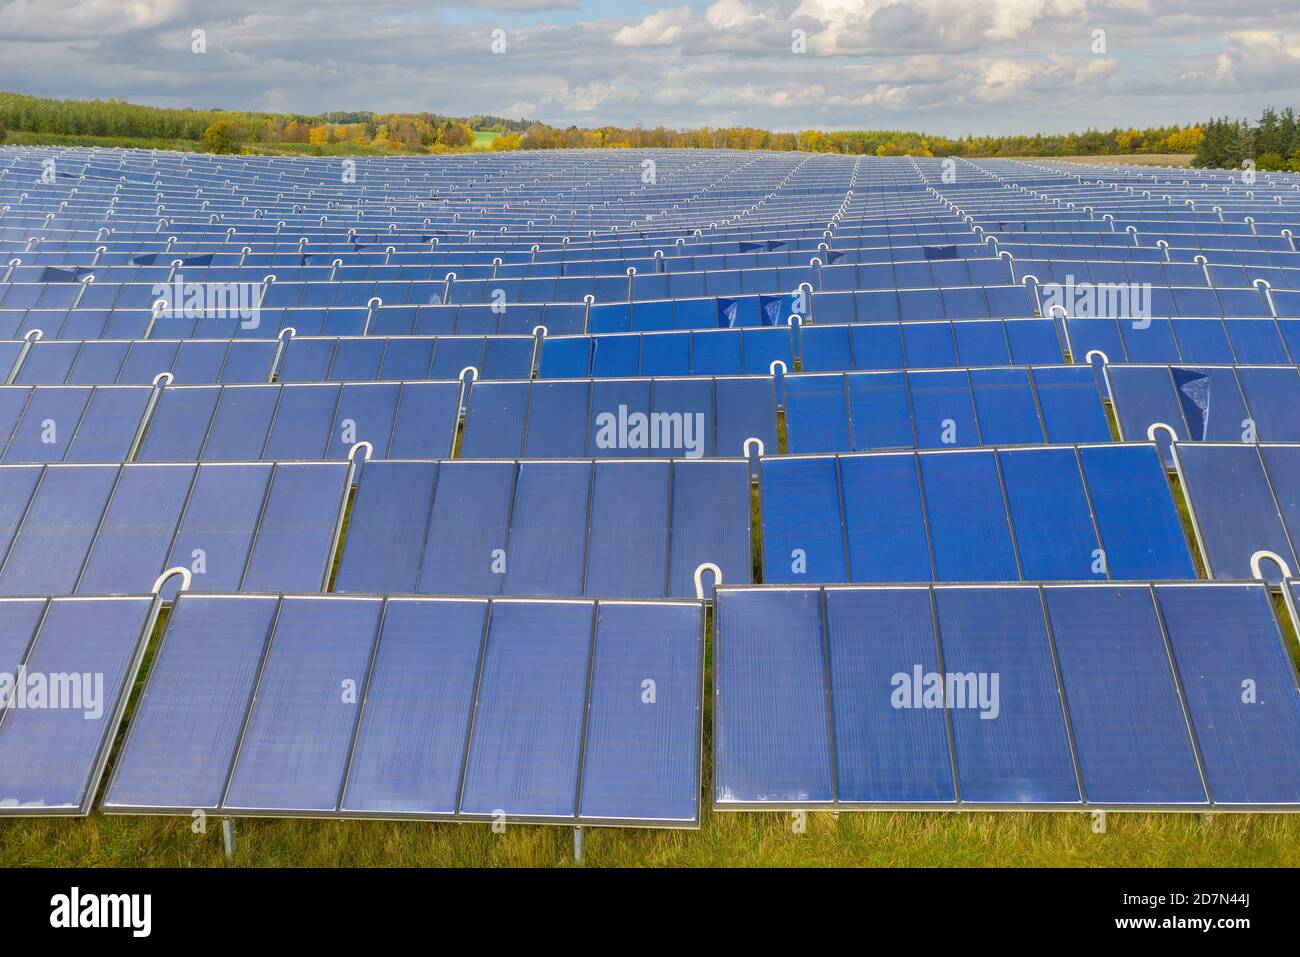 Parc d'énergie solaire à Silkeborg, Danemark. Il couvre une superficie de 156.000 m2 ou 22 terrains de football et dispose de 12,000 panneaux solaires. Banque D'Images